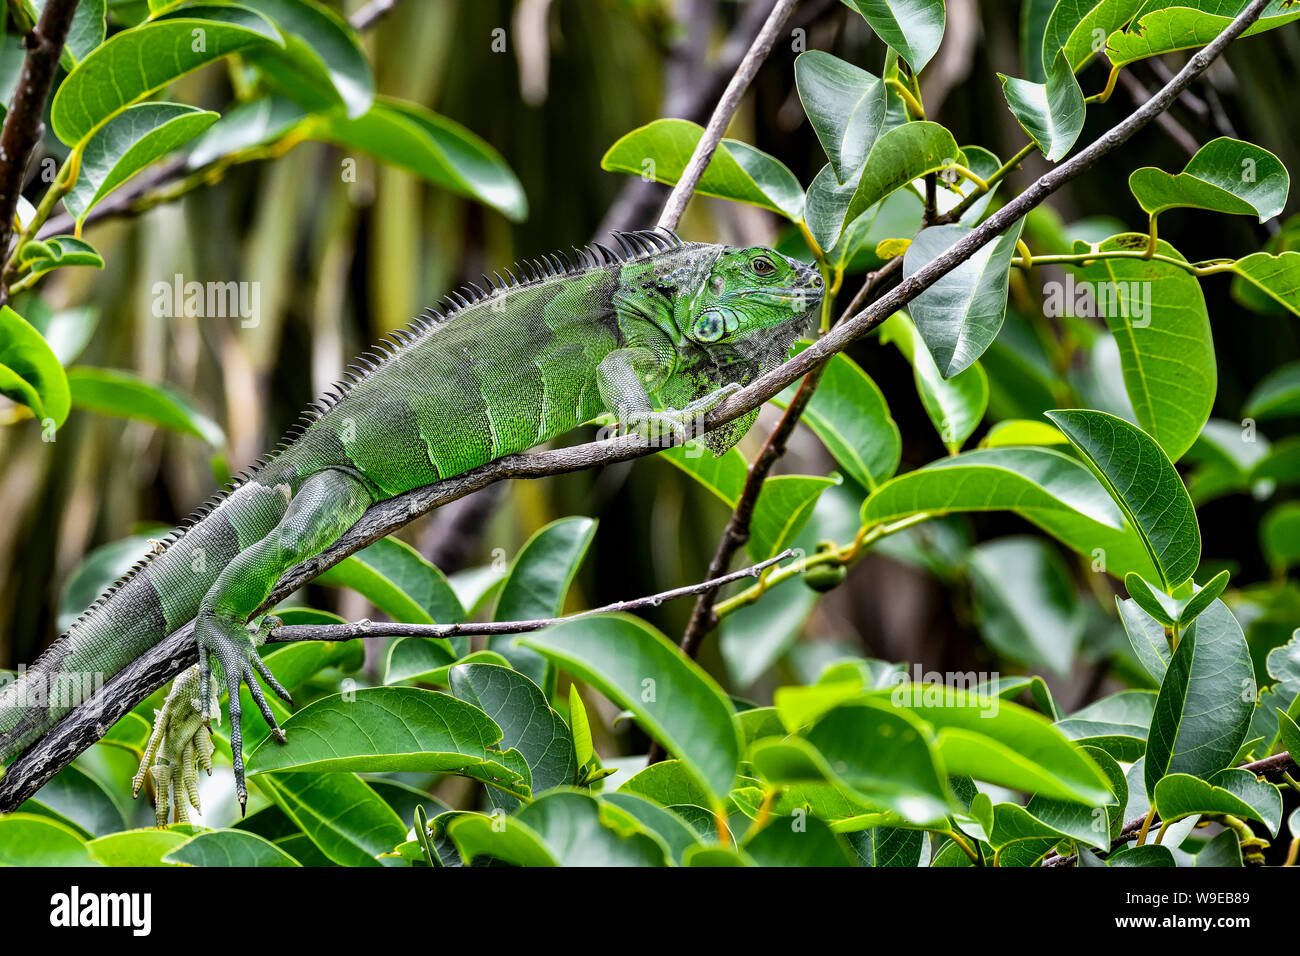 L'iguane vert mélanger étonnamment bien dans la végétation environnante. Vous pouvez facilement marcher par sans le voir. Banque D'Images